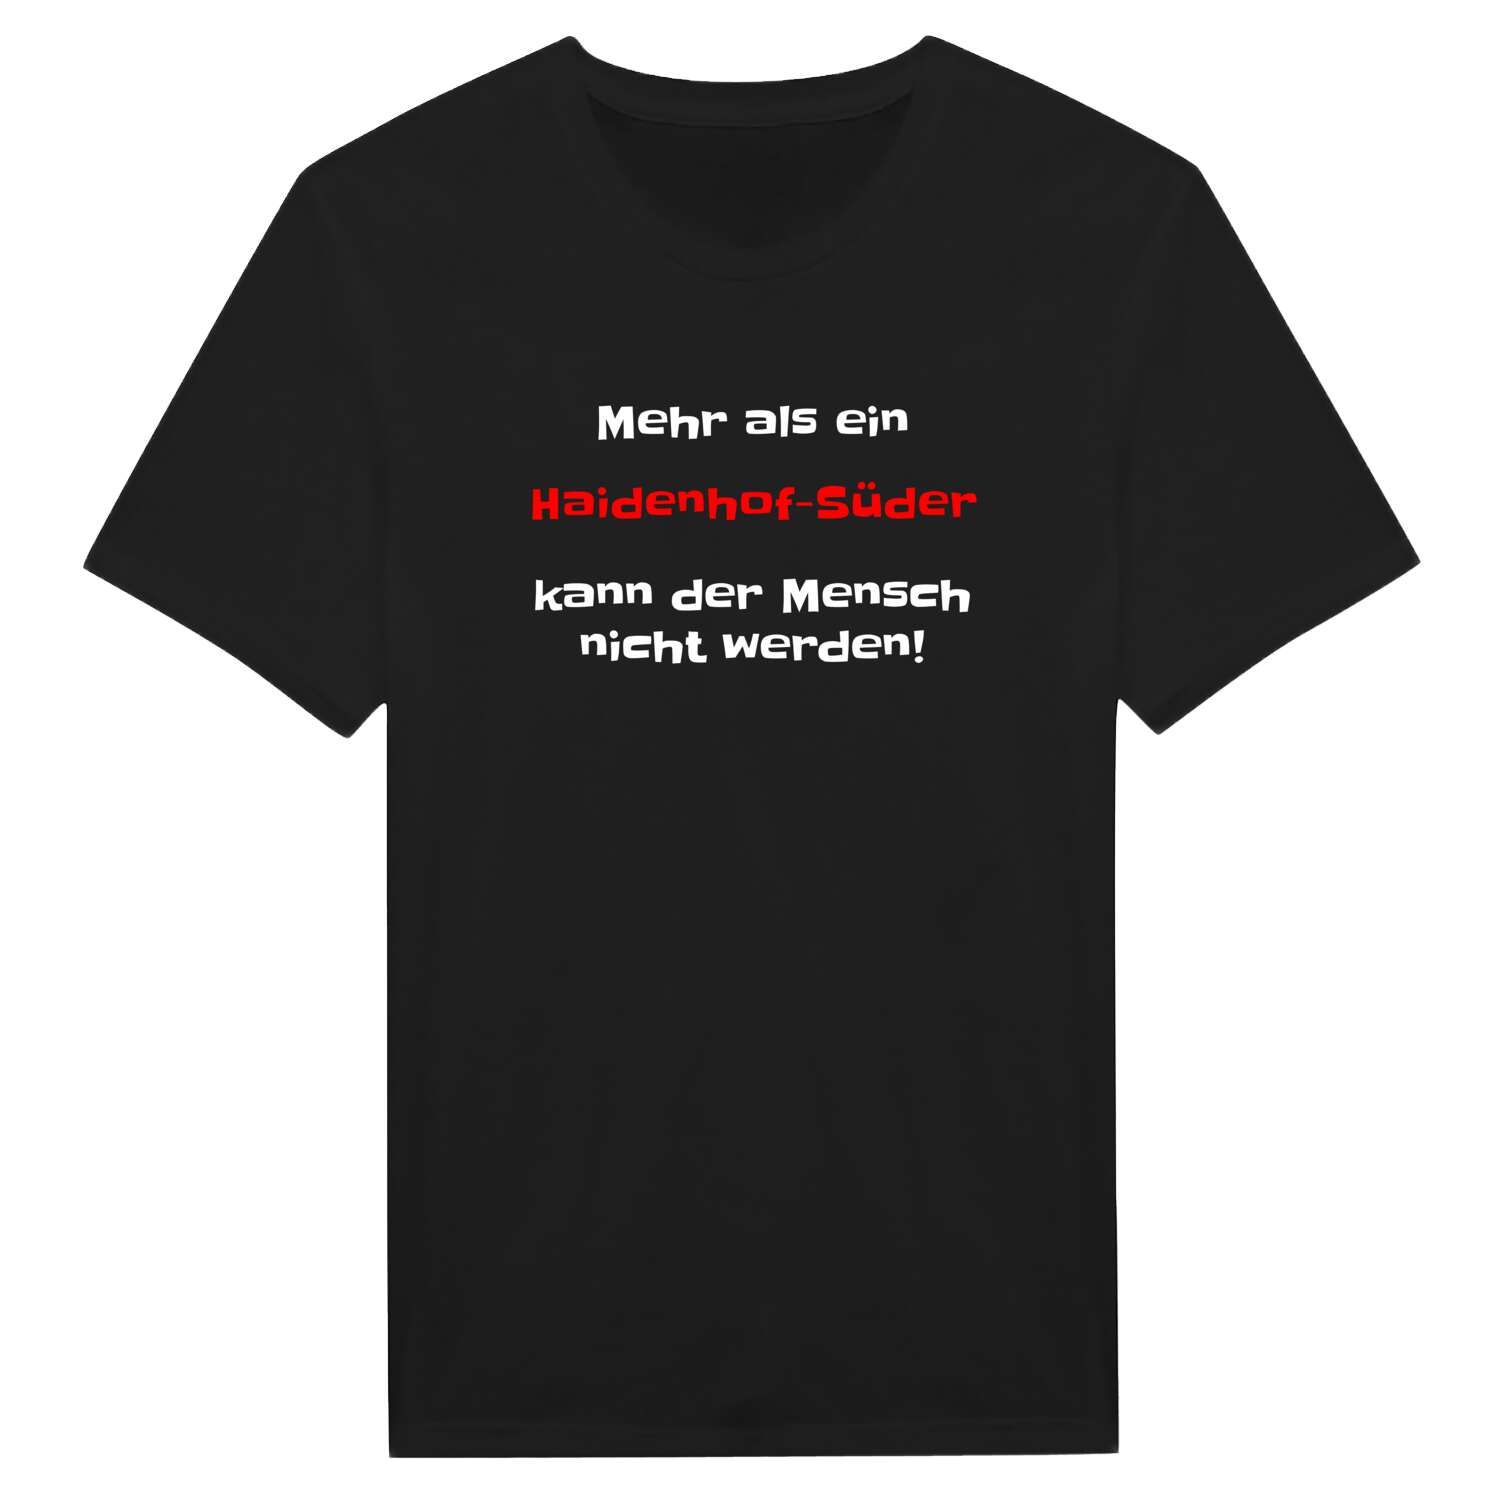 Haidenhof-Süd T-Shirt »Mehr als ein«